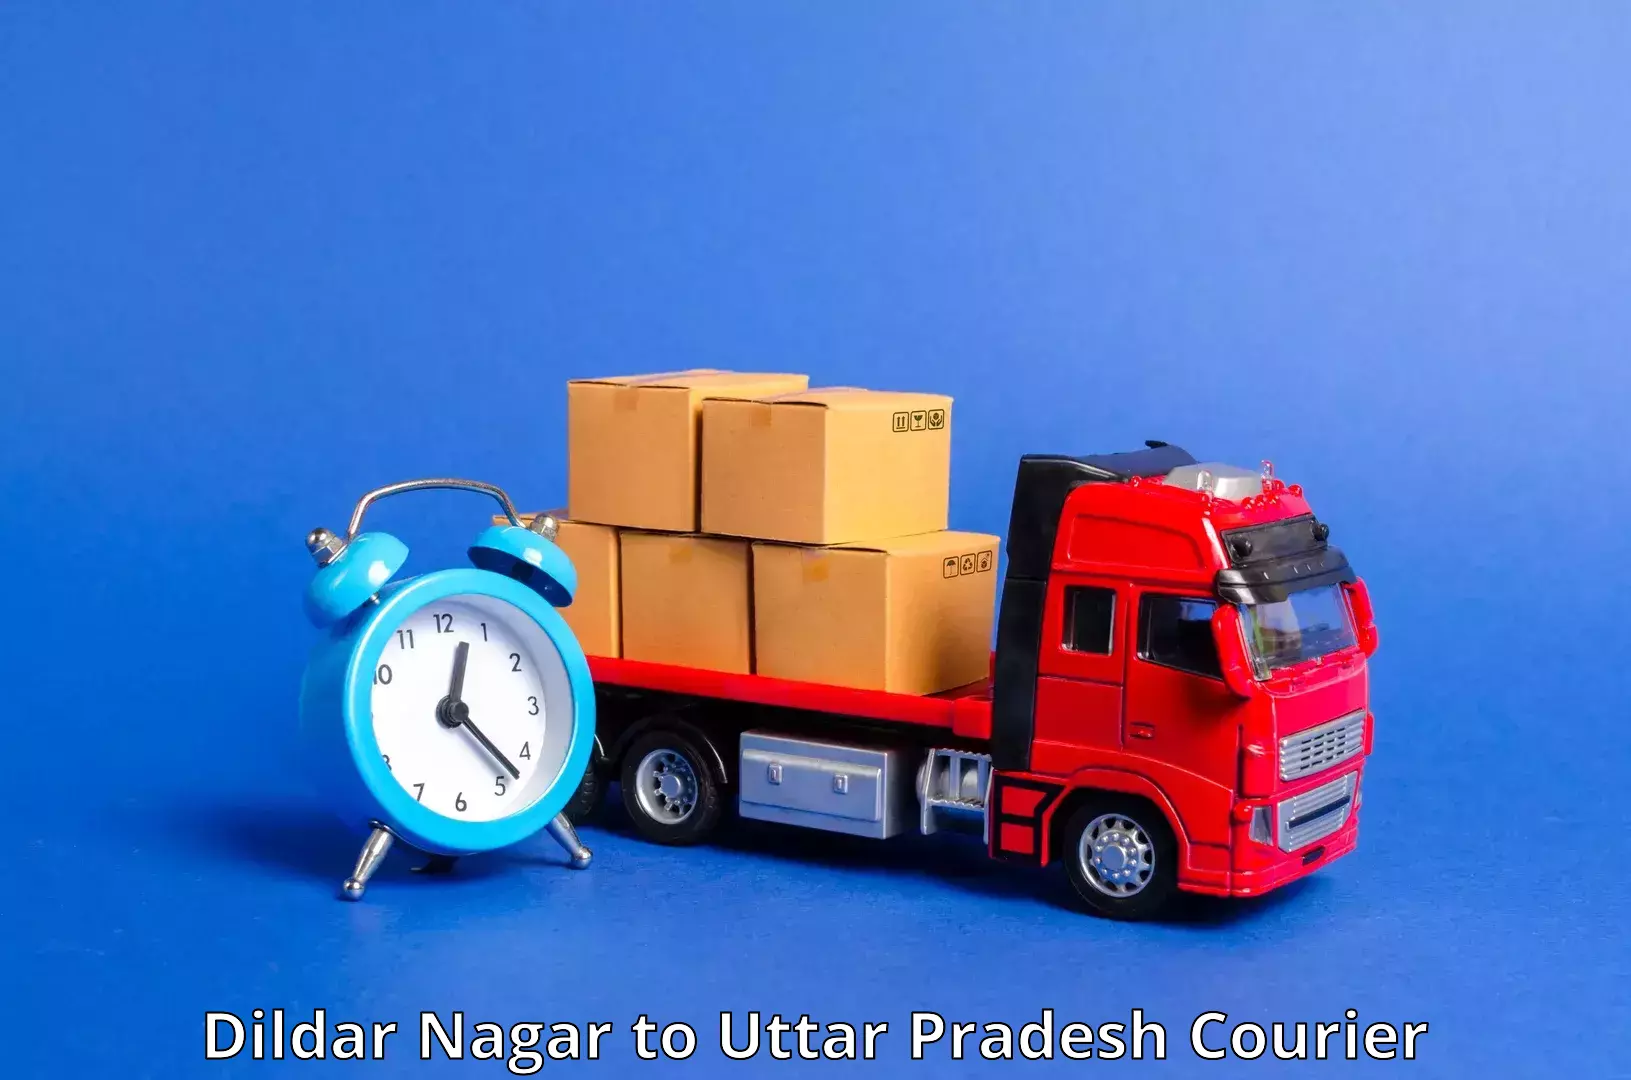 Express courier capabilities Dildar Nagar to Mainpuri